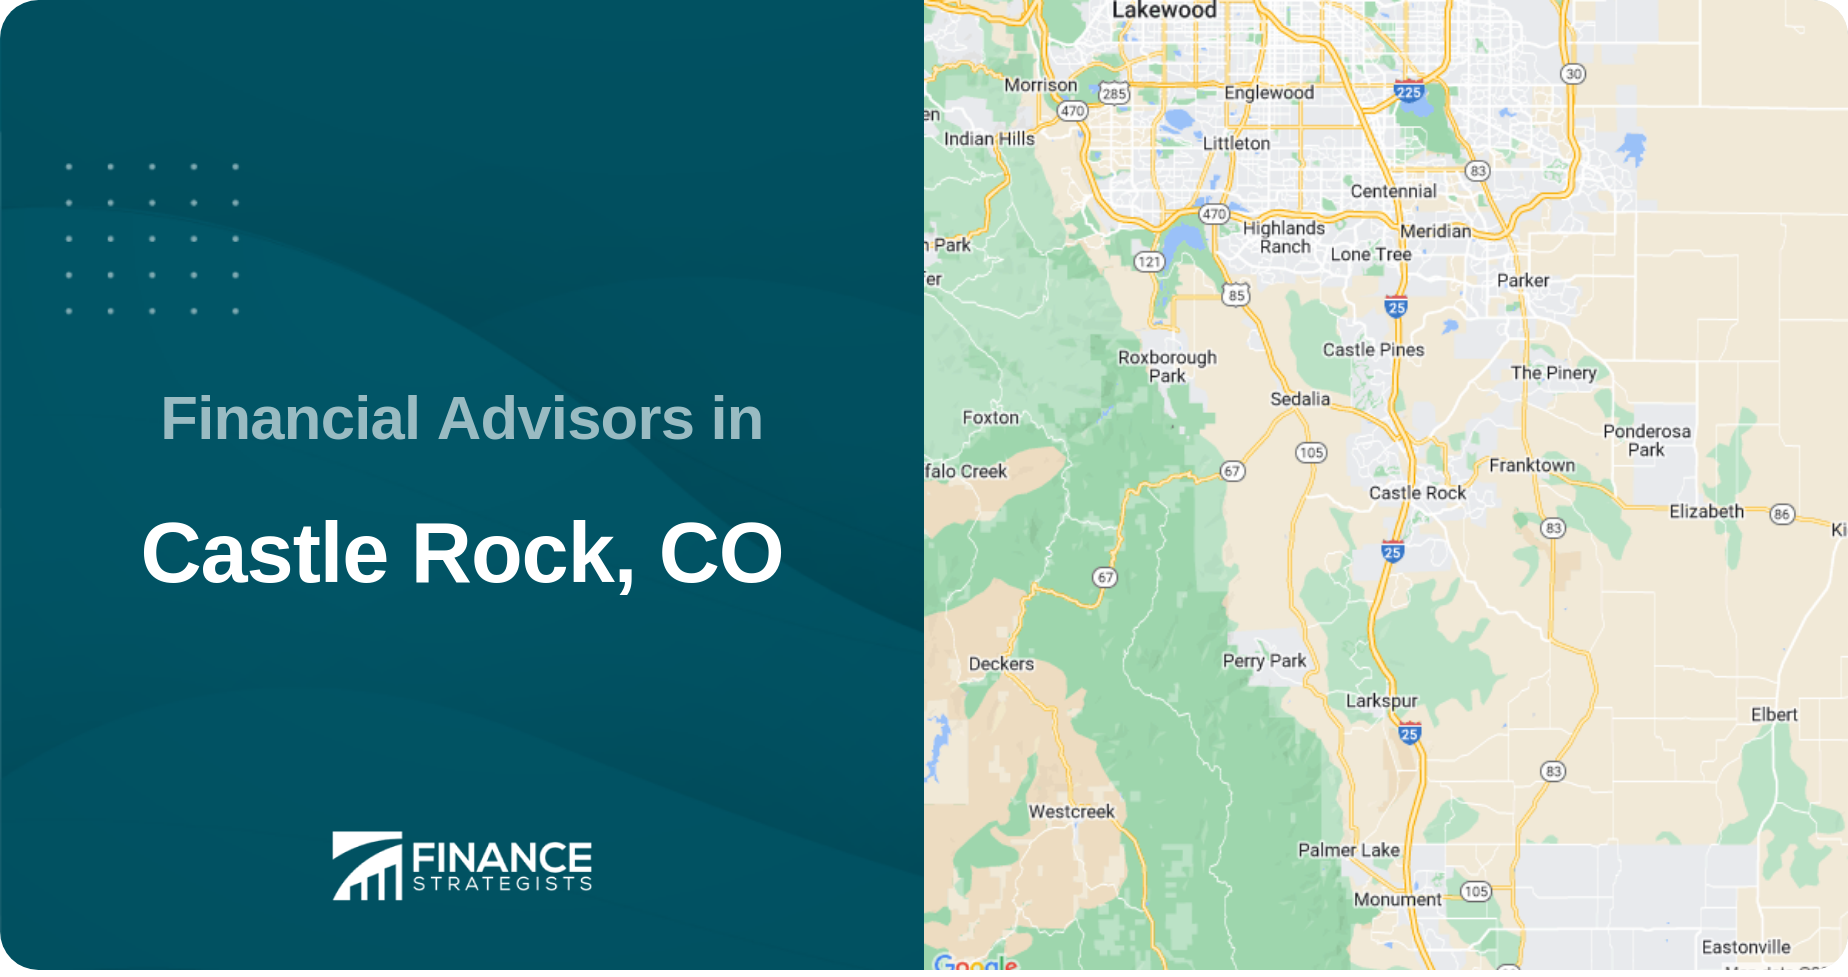 Financial Advisors in Castle Rock, CO